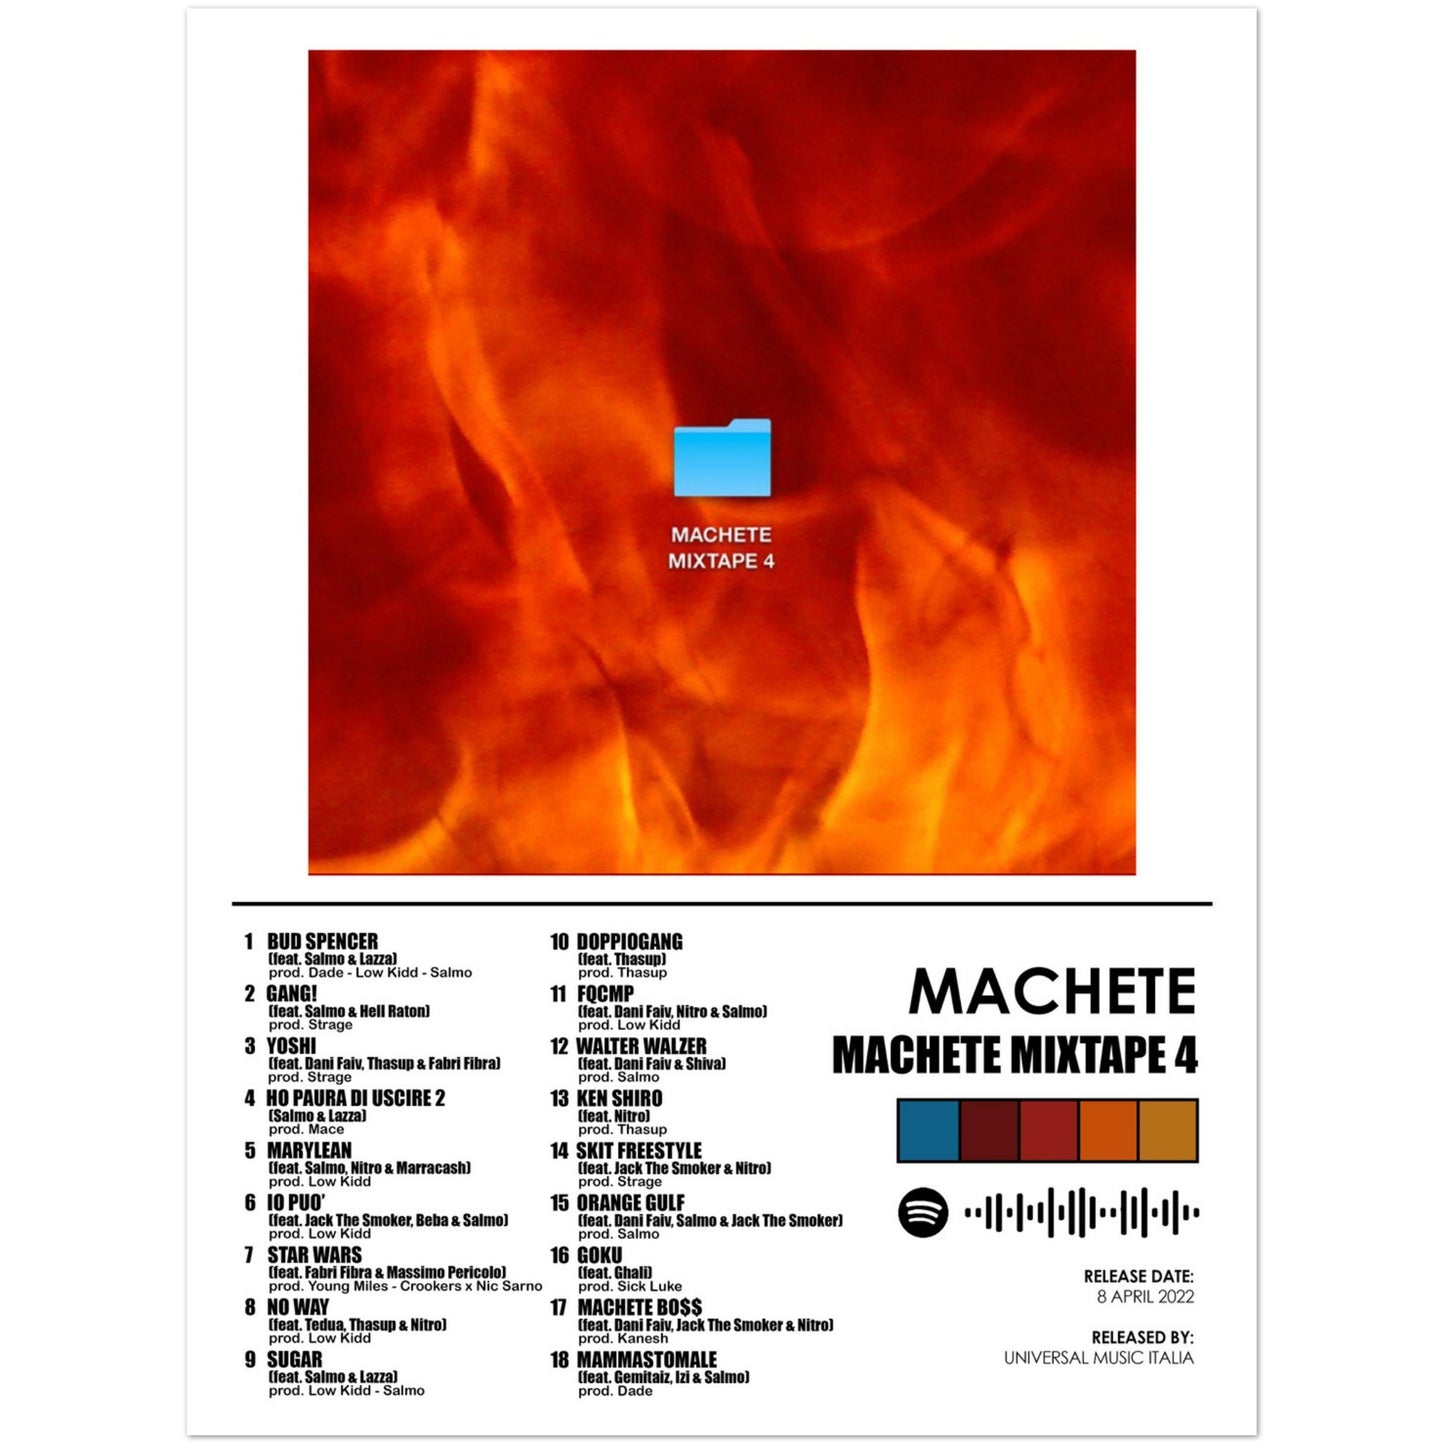 Poster album "Machete mixtape 4" (Machete)